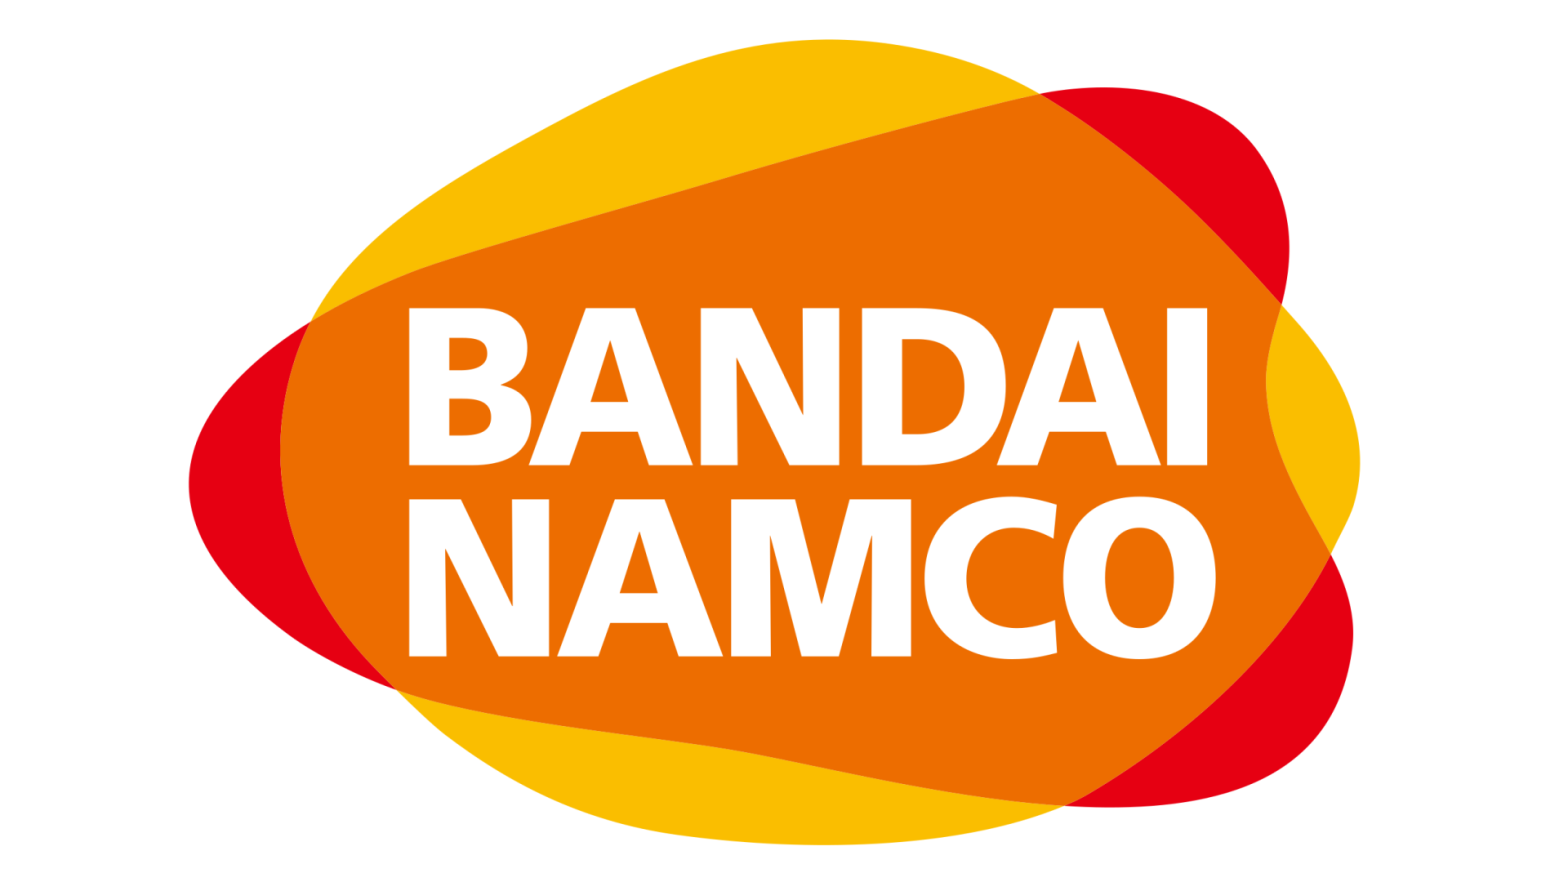 Image: Bandai Namco